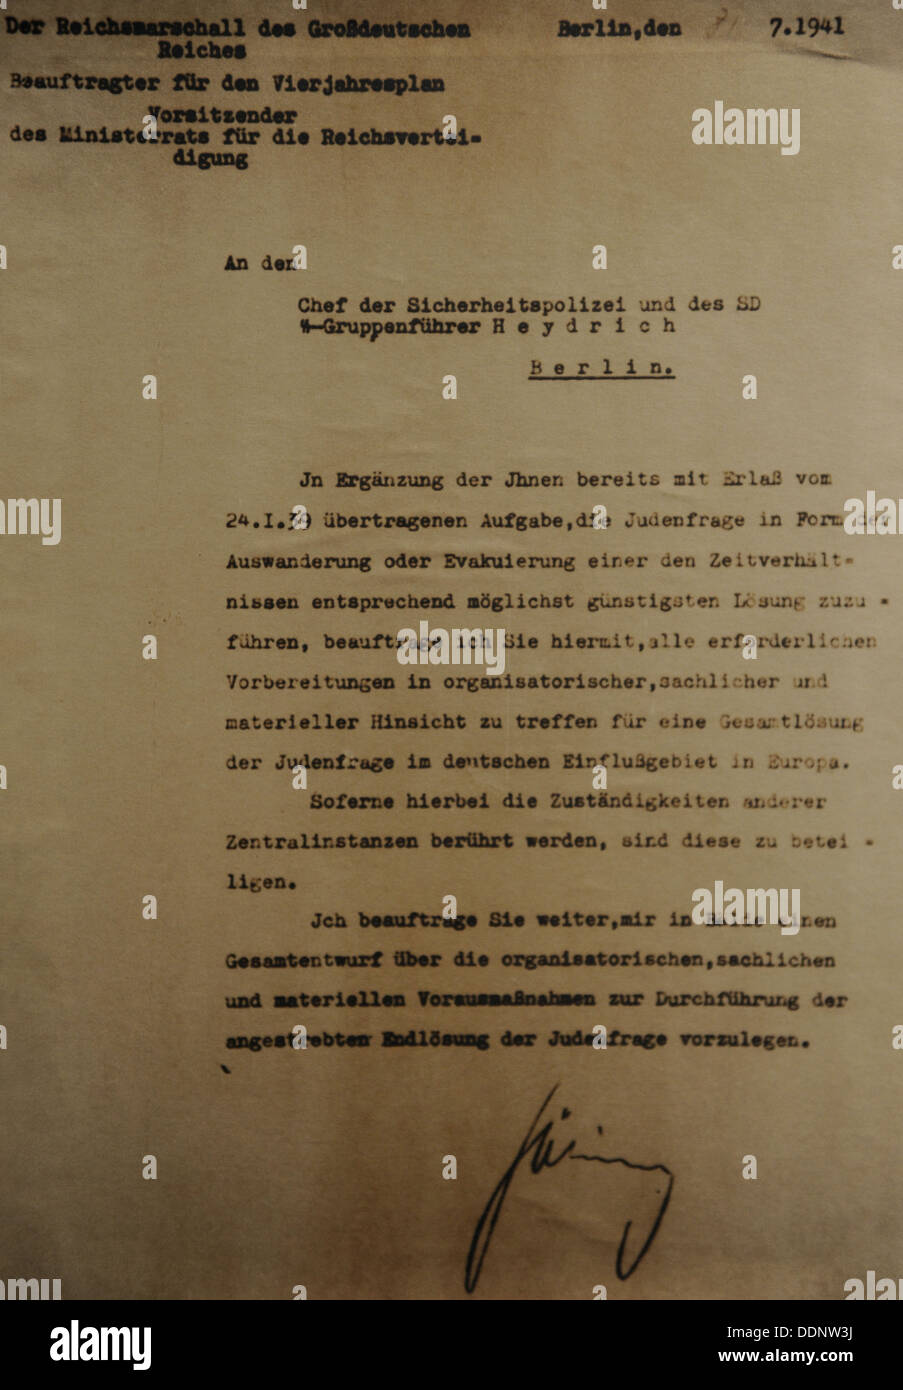 Documento nazista. Ordine di Hermann Göring sulle misure necessarie per la soluzione finale della questione ebraica. Berlino, 31 luglio 1941. Foto Stock